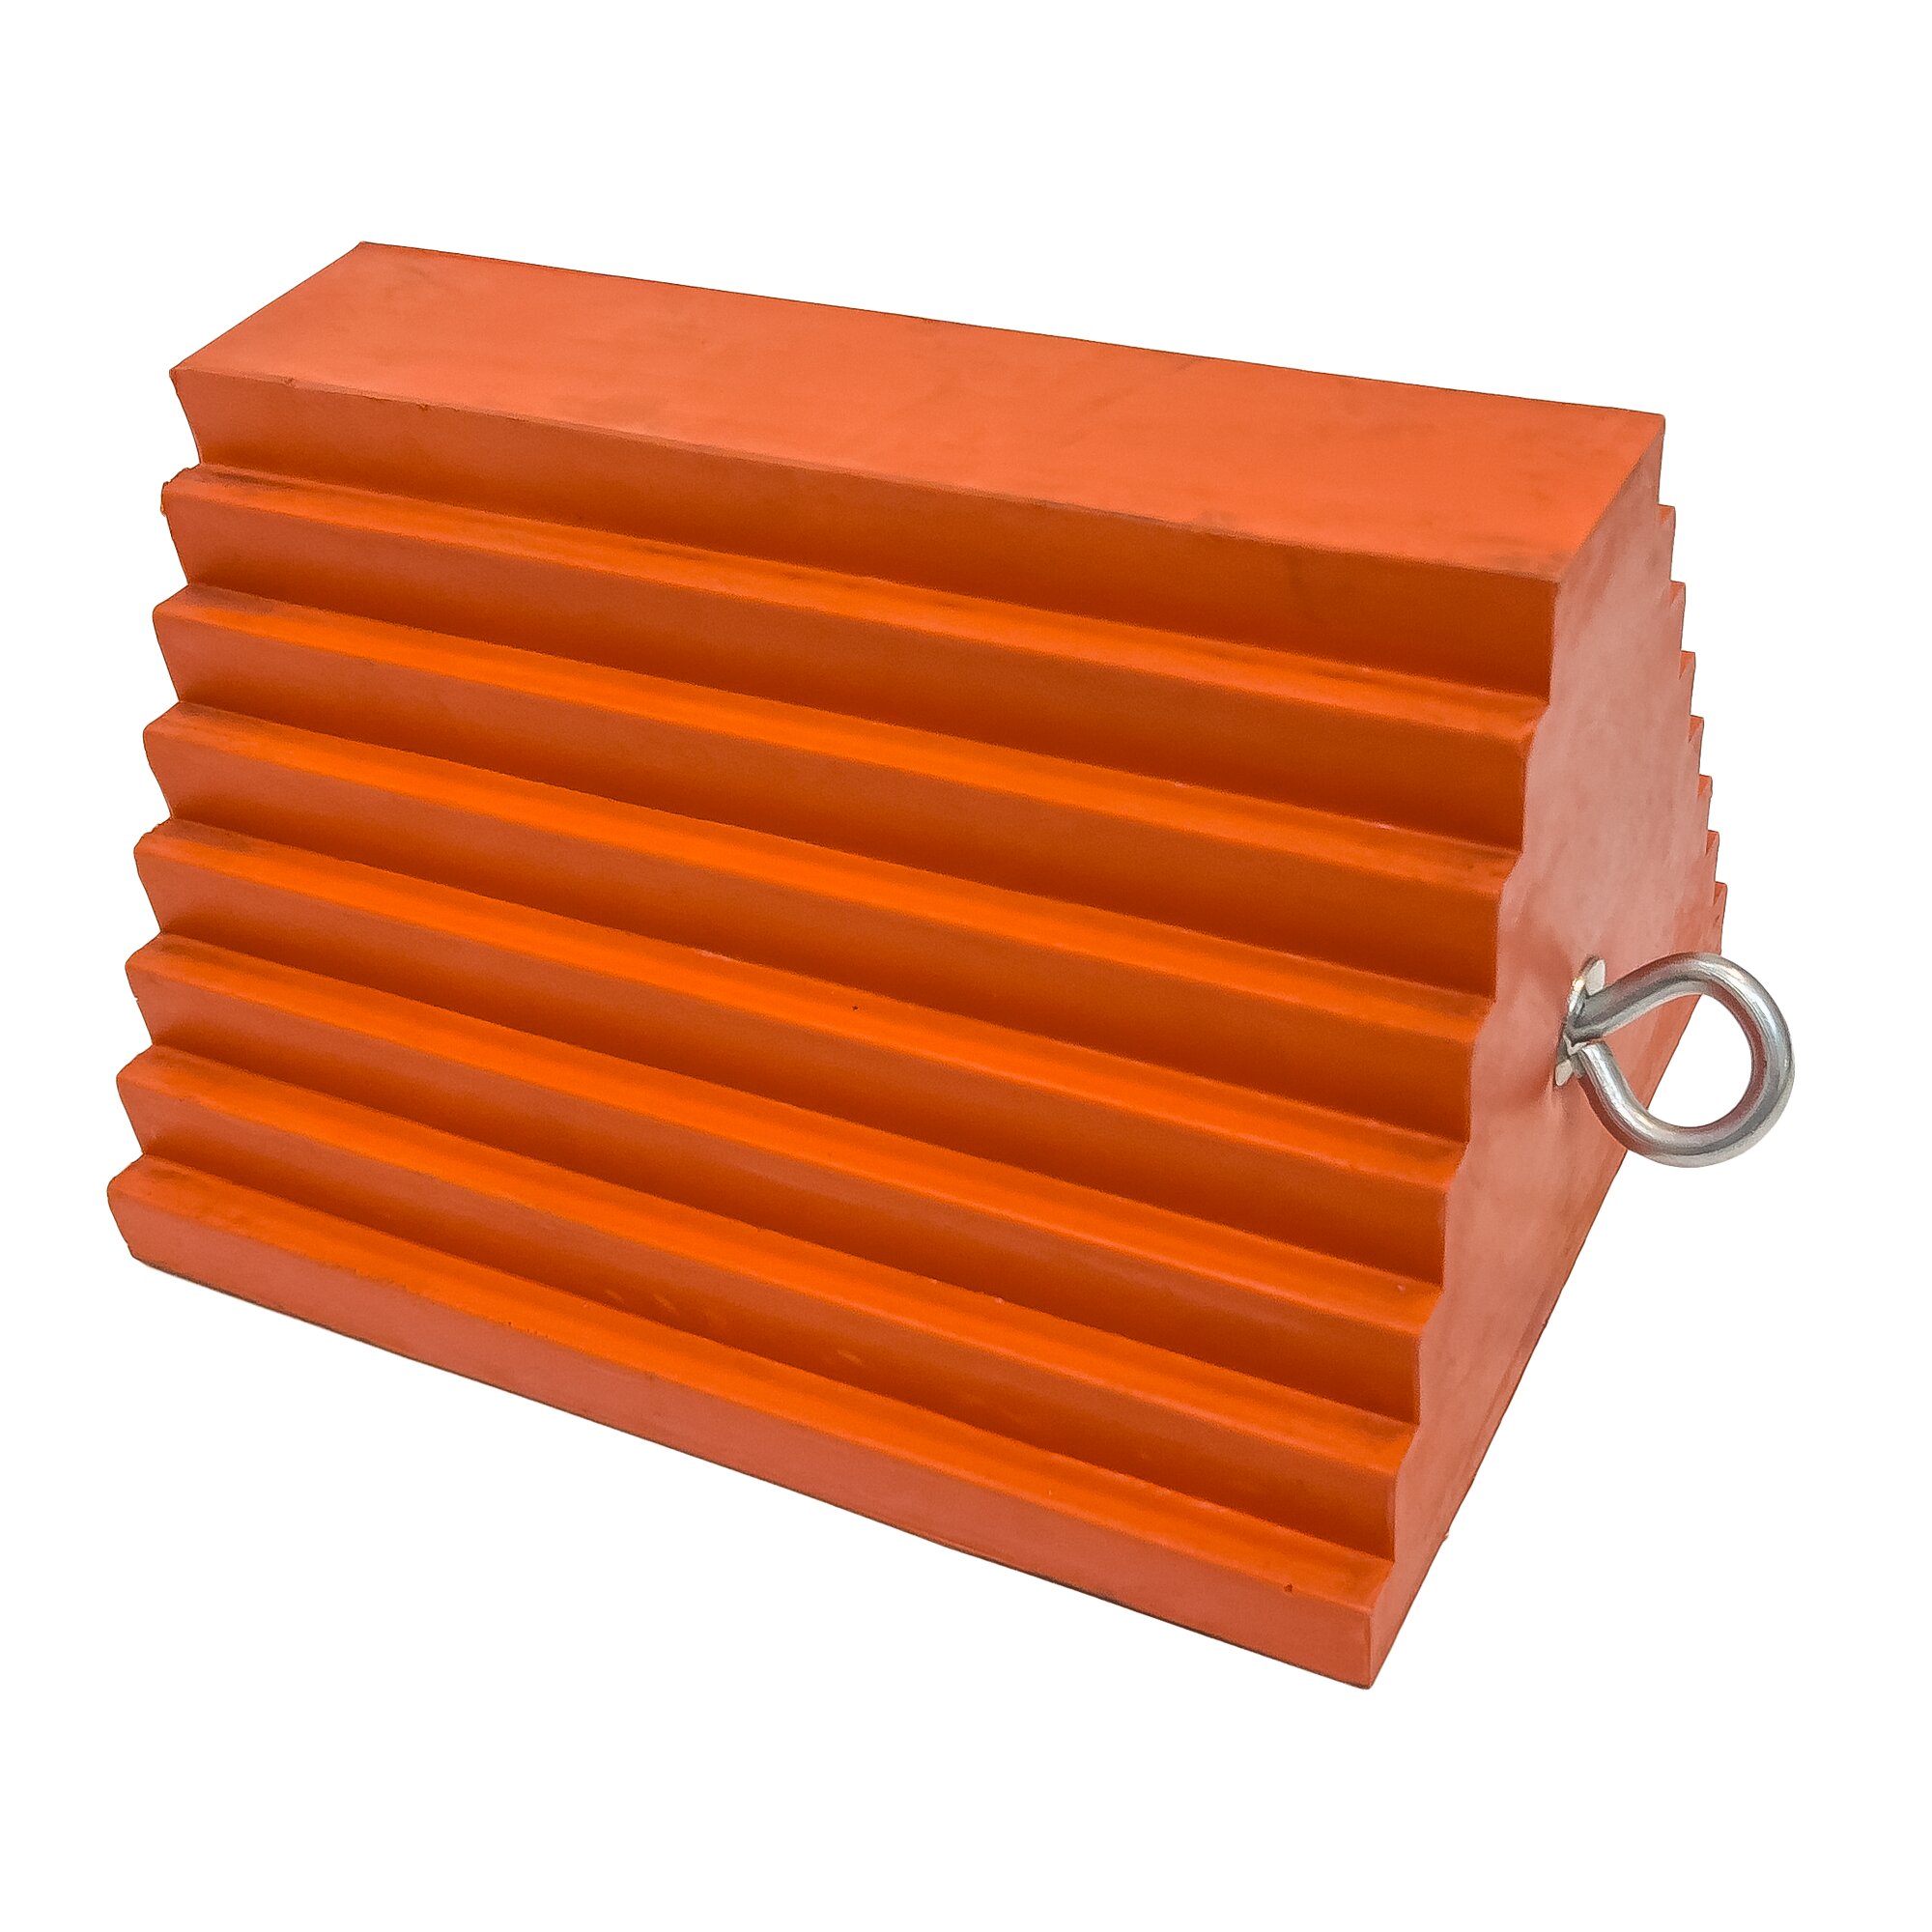 Oranžový plastový zakládací klín pod kola UCTS003 - délka 25 cm, šířka 20 cm, výška 15 cm